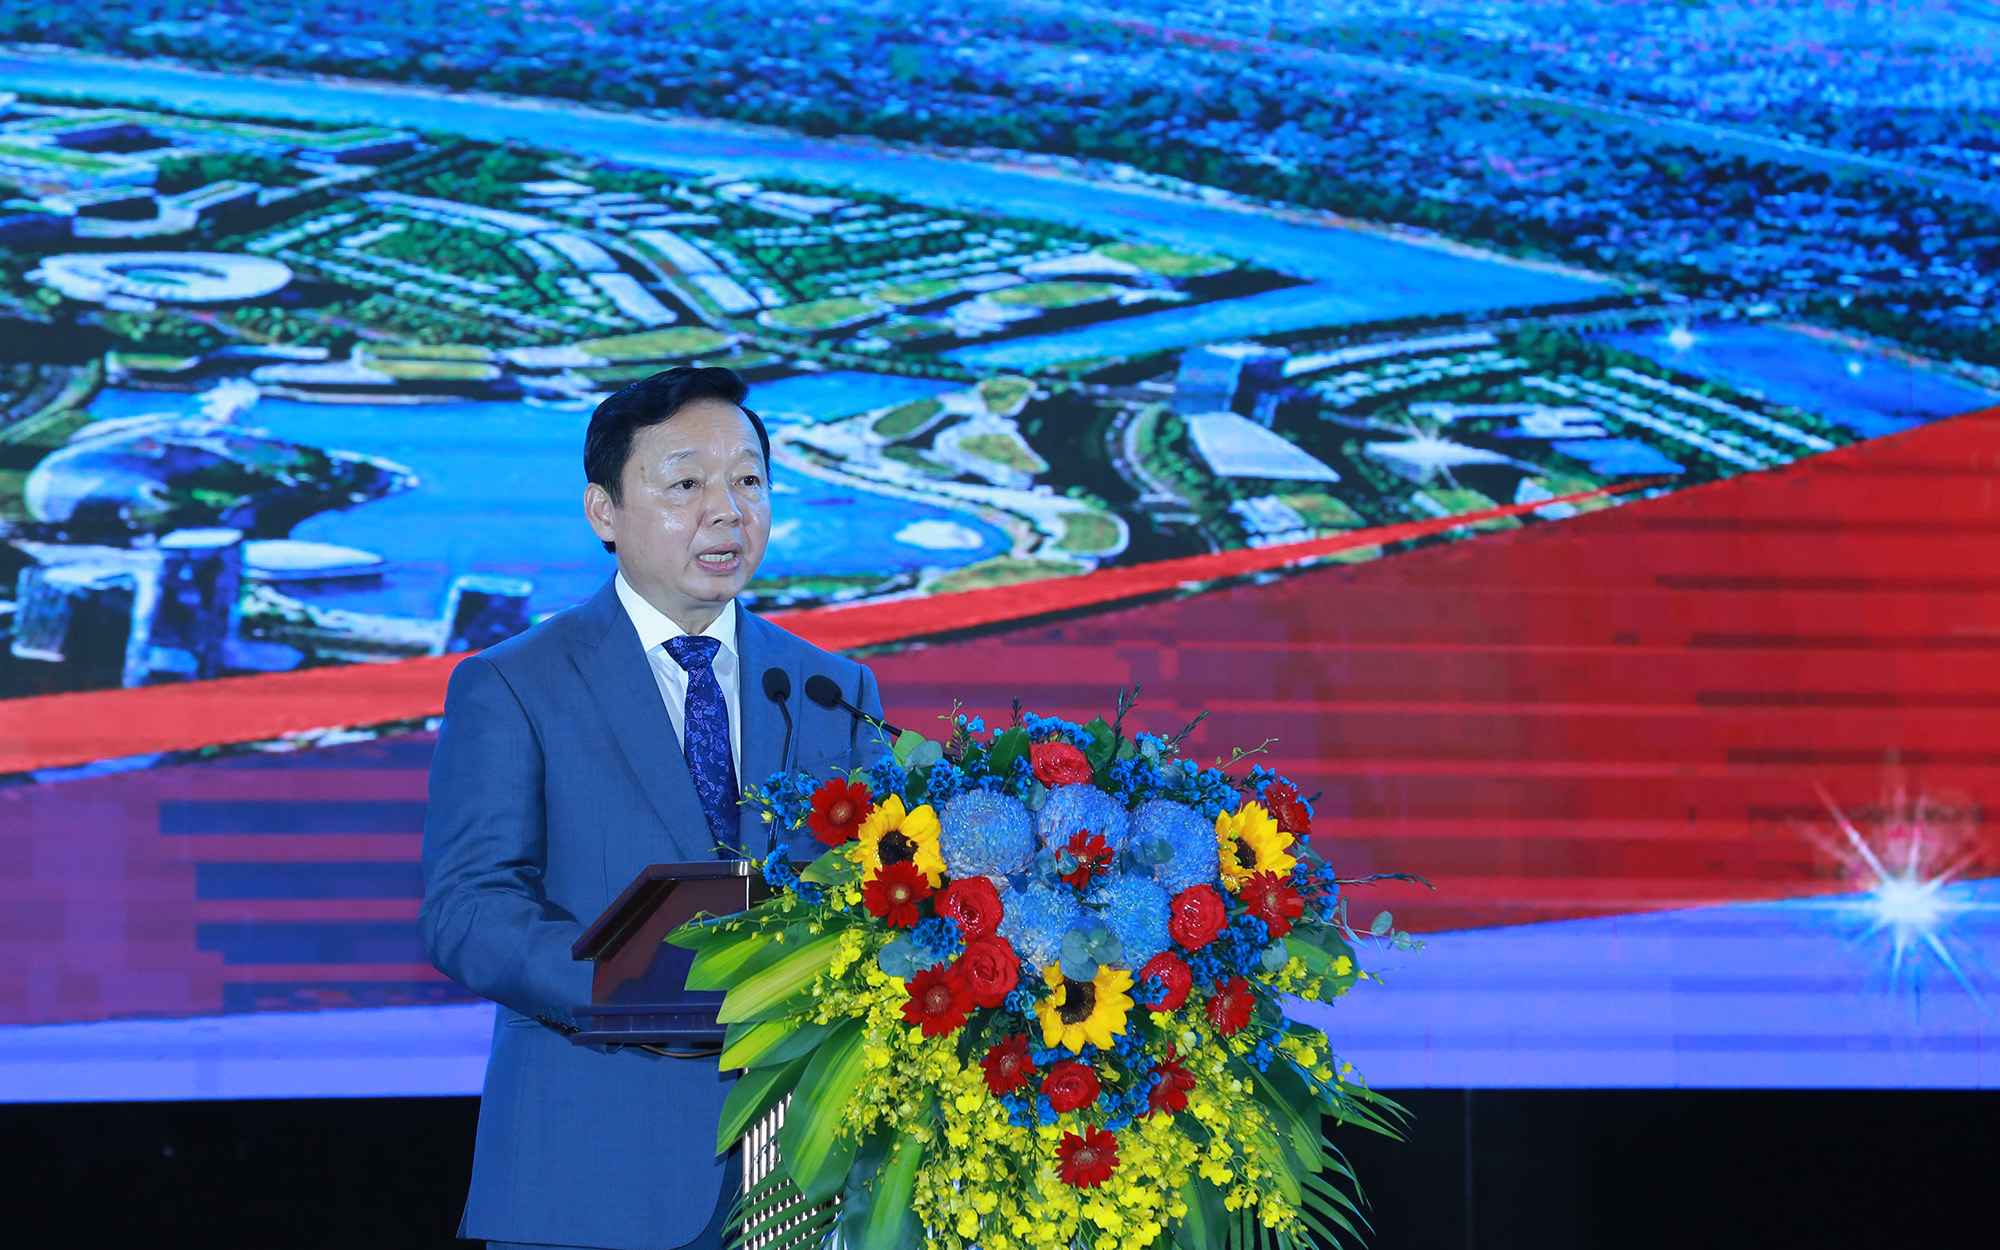 Phó Thủ tướng Trần Hồng Hà: Quy hoạch chung đô thị mới Cam Lâm được kỳ vọng sẽ khởi nguồn cho những sáng tạo, đề xuất mô hình, cơ chế, chính sách mới trong lộ trình chỉnh trang và phát triển đô thị cả nước - Ảnh: VGP/Minh Khôi